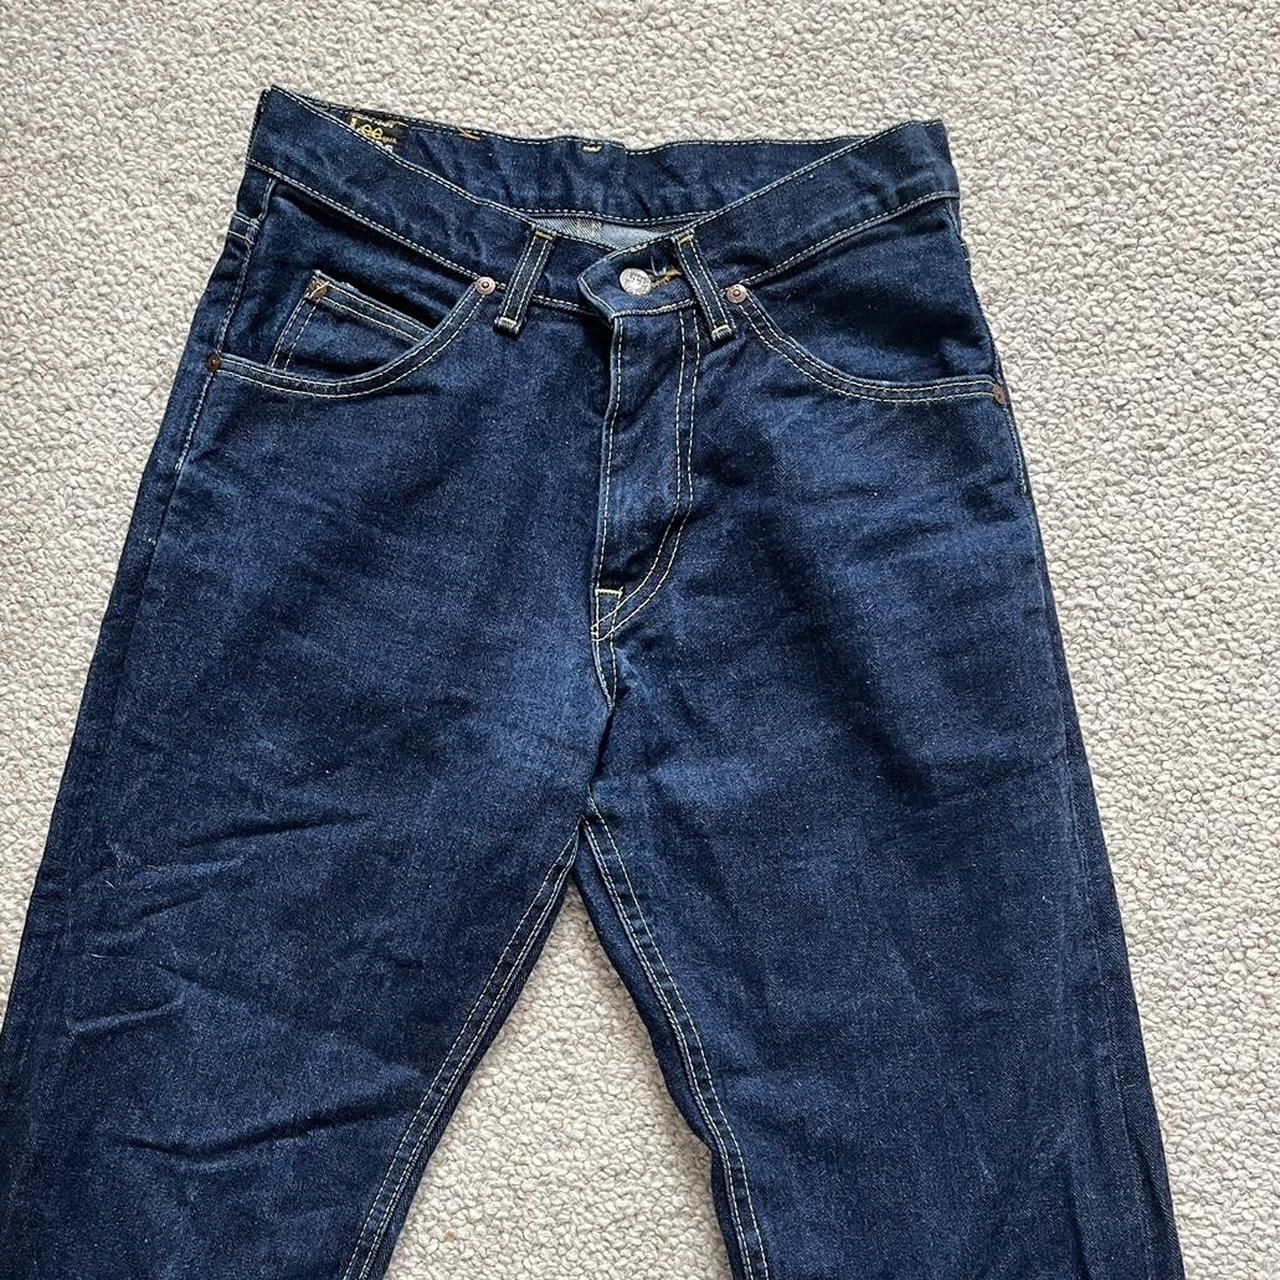 Lee by Lev vintage straight leg jeans, selling as... - Depop